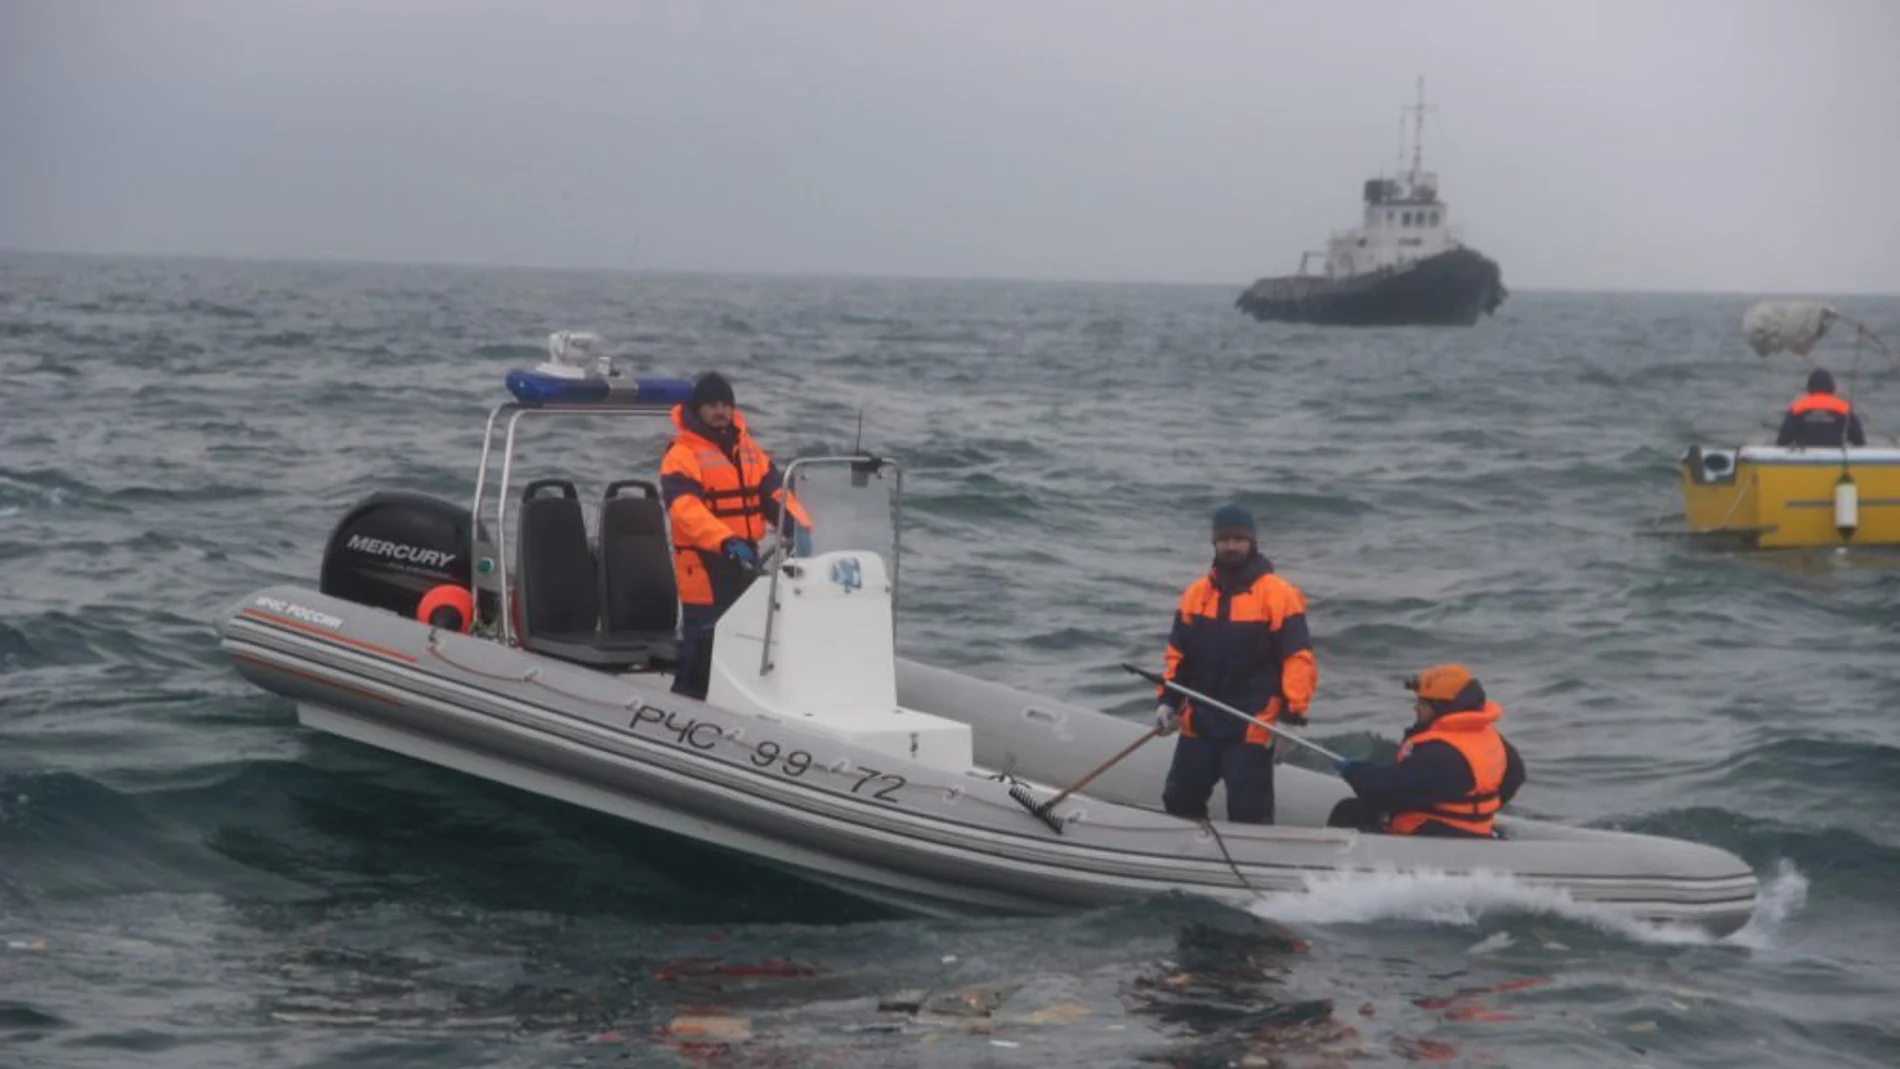 Miembros de emergencias buscan los restos del avión siniestrado en el Mar Muerto.